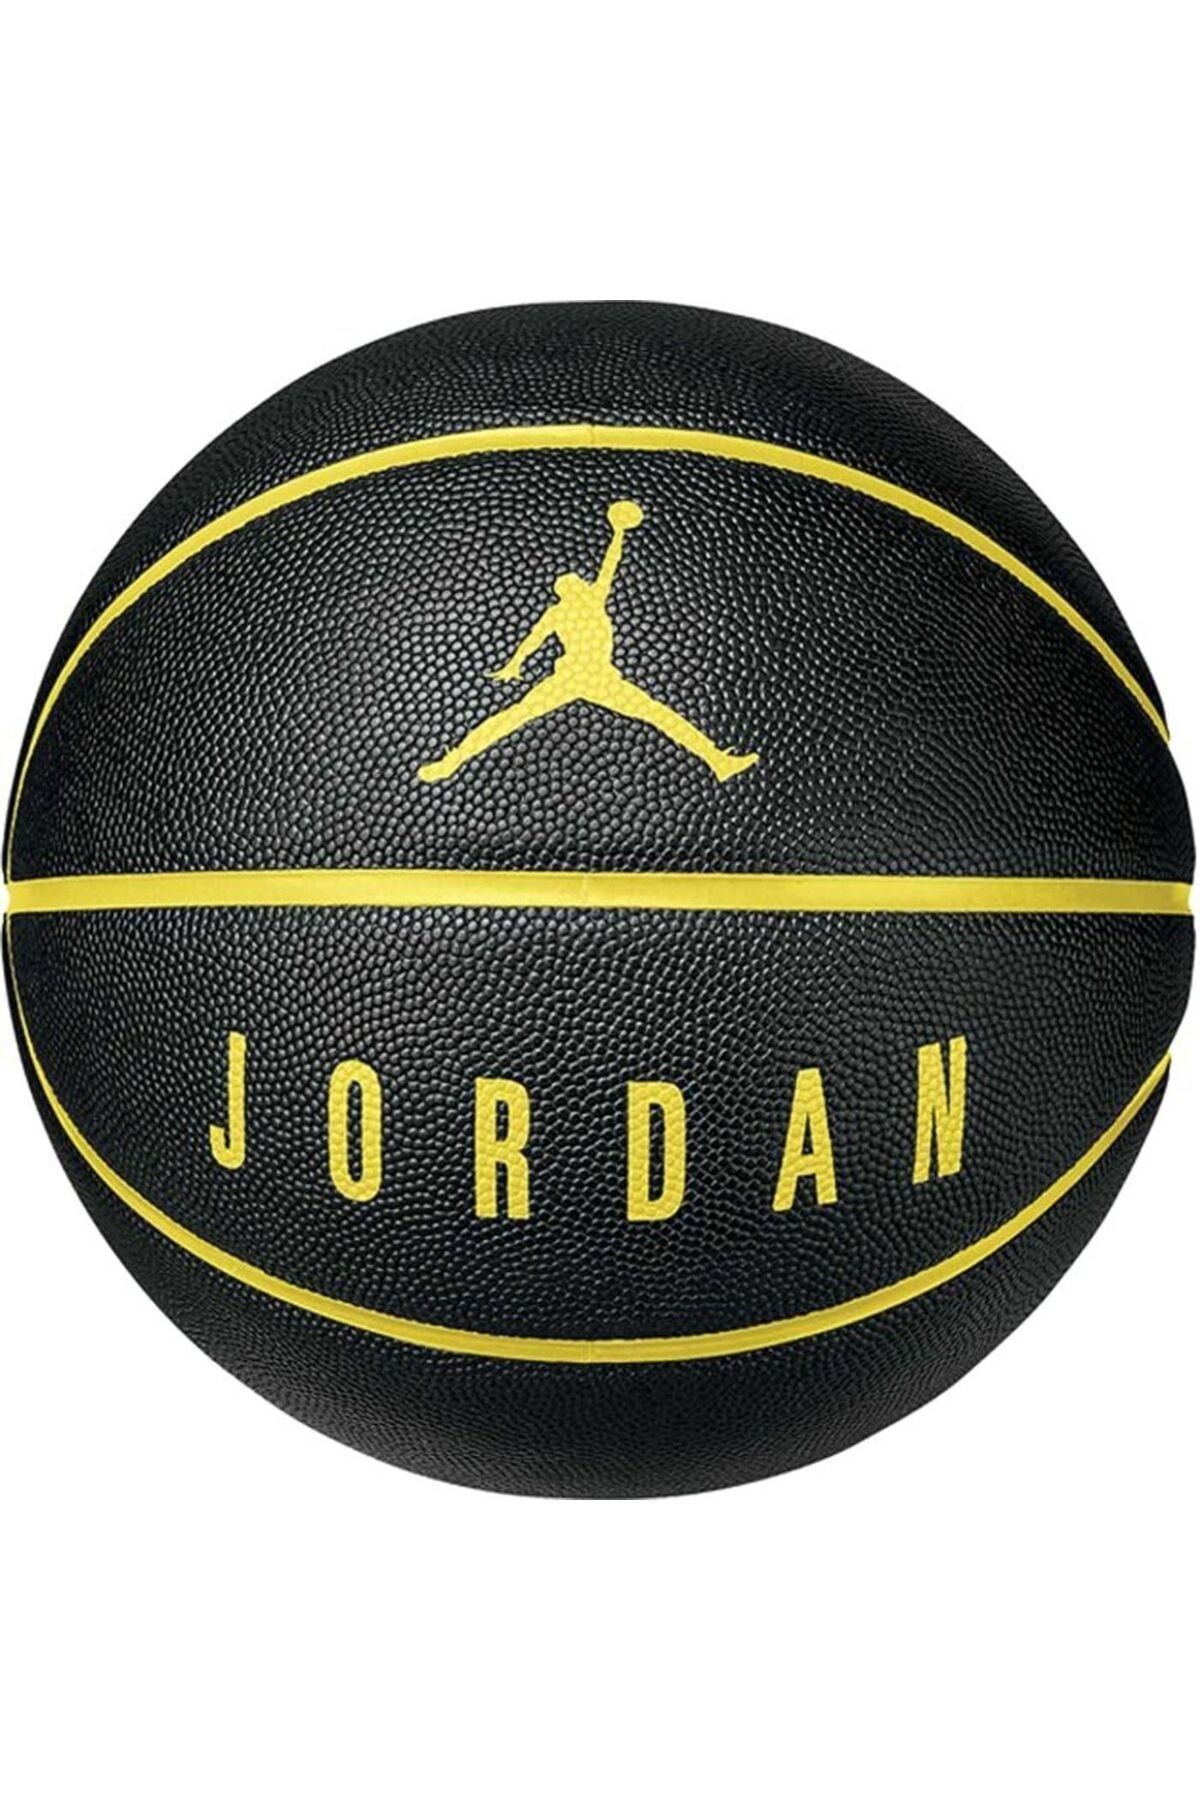 Nike JORDAN ULTIMATE 8P Siyah-Altın Unisex Basketbol Topu